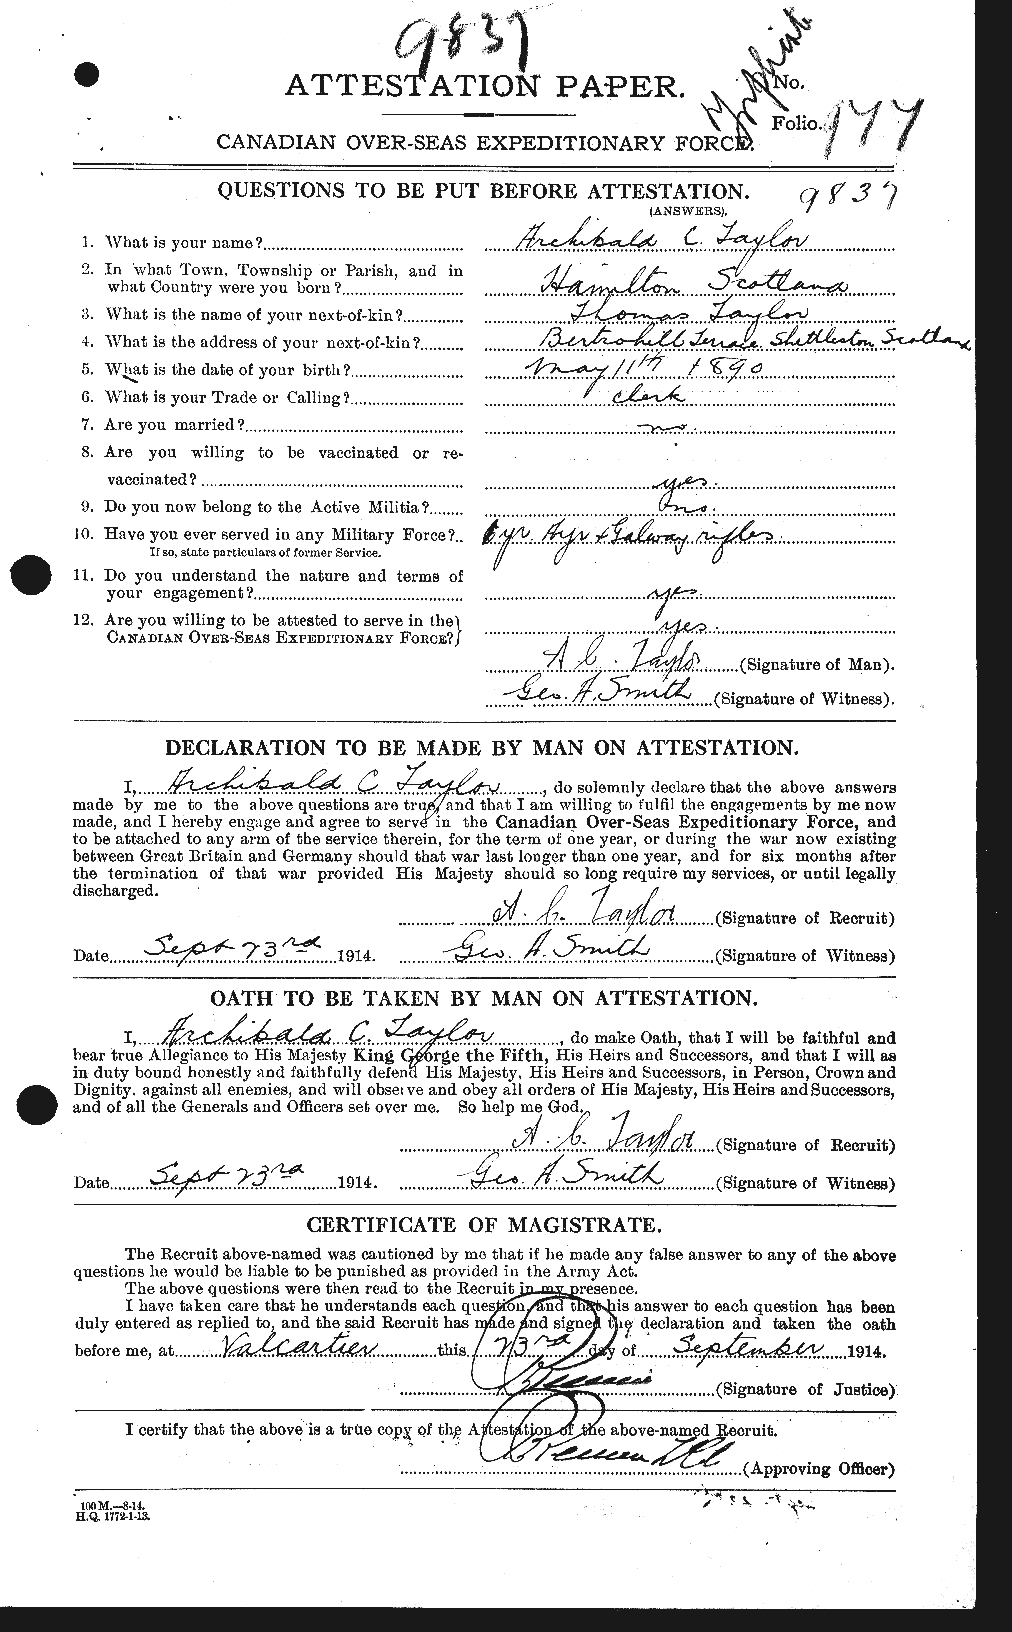 Dossiers du Personnel de la Première Guerre mondiale - CEC 626241a